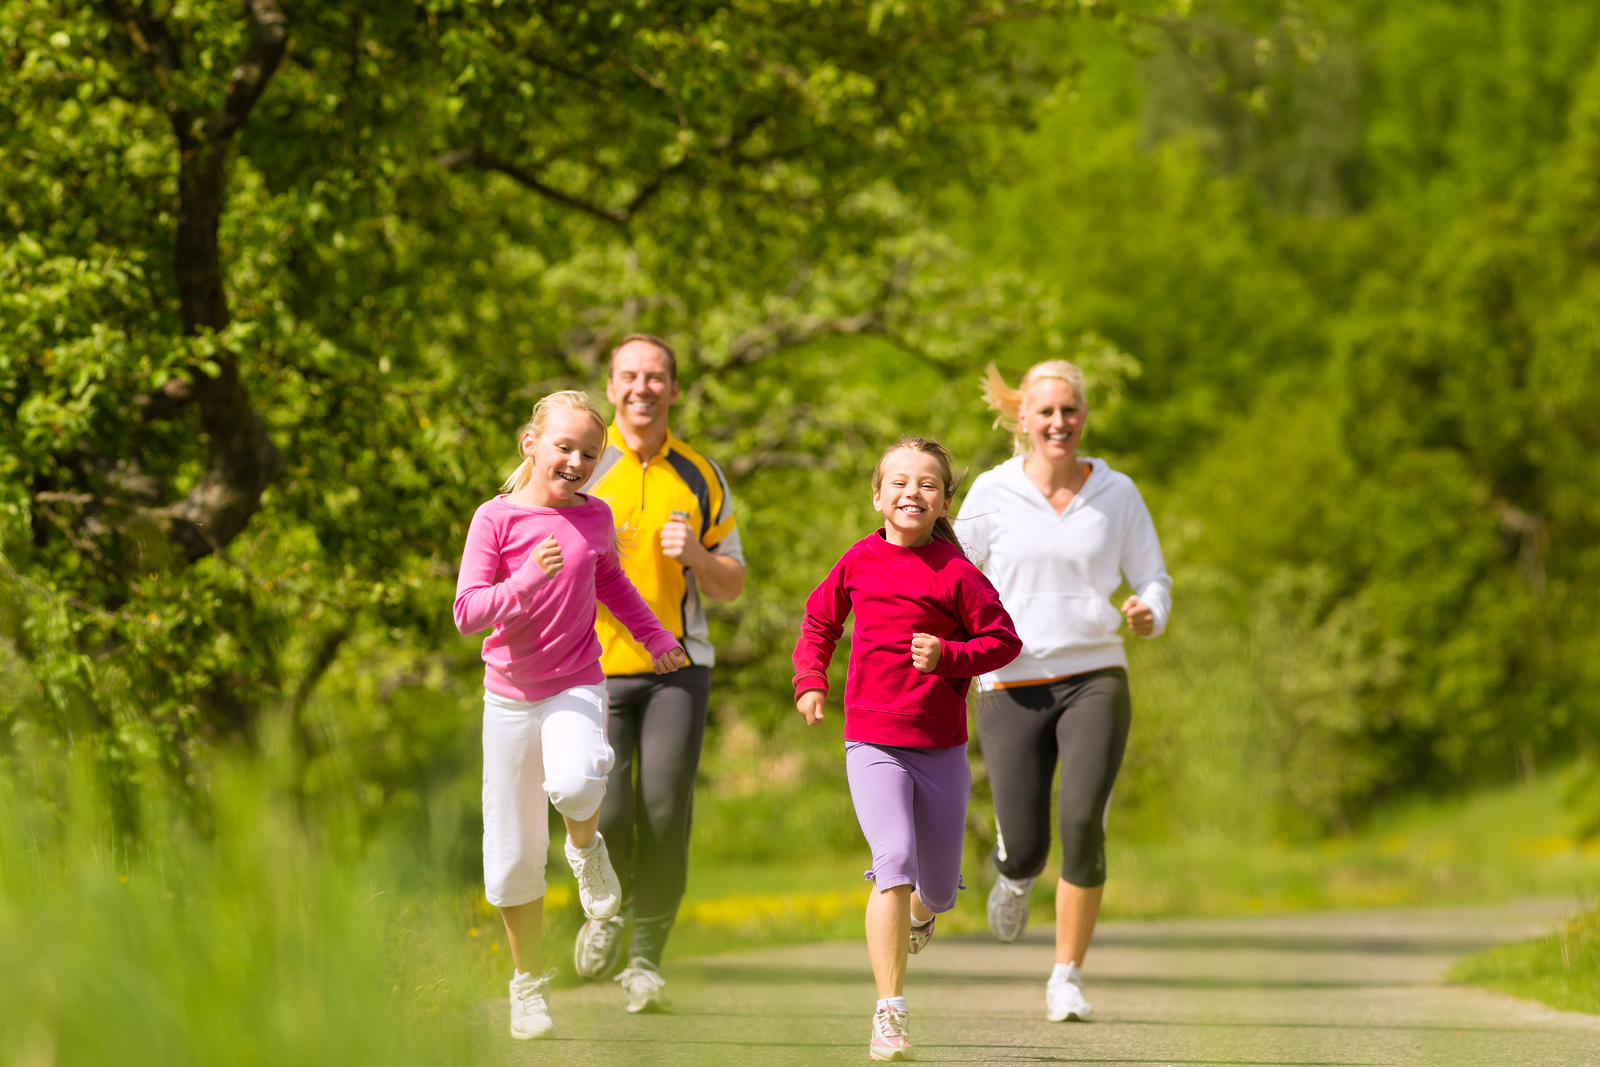 tập thể dục thường xuyên có thể làm giảm đáng kể nguy cơ ung thư